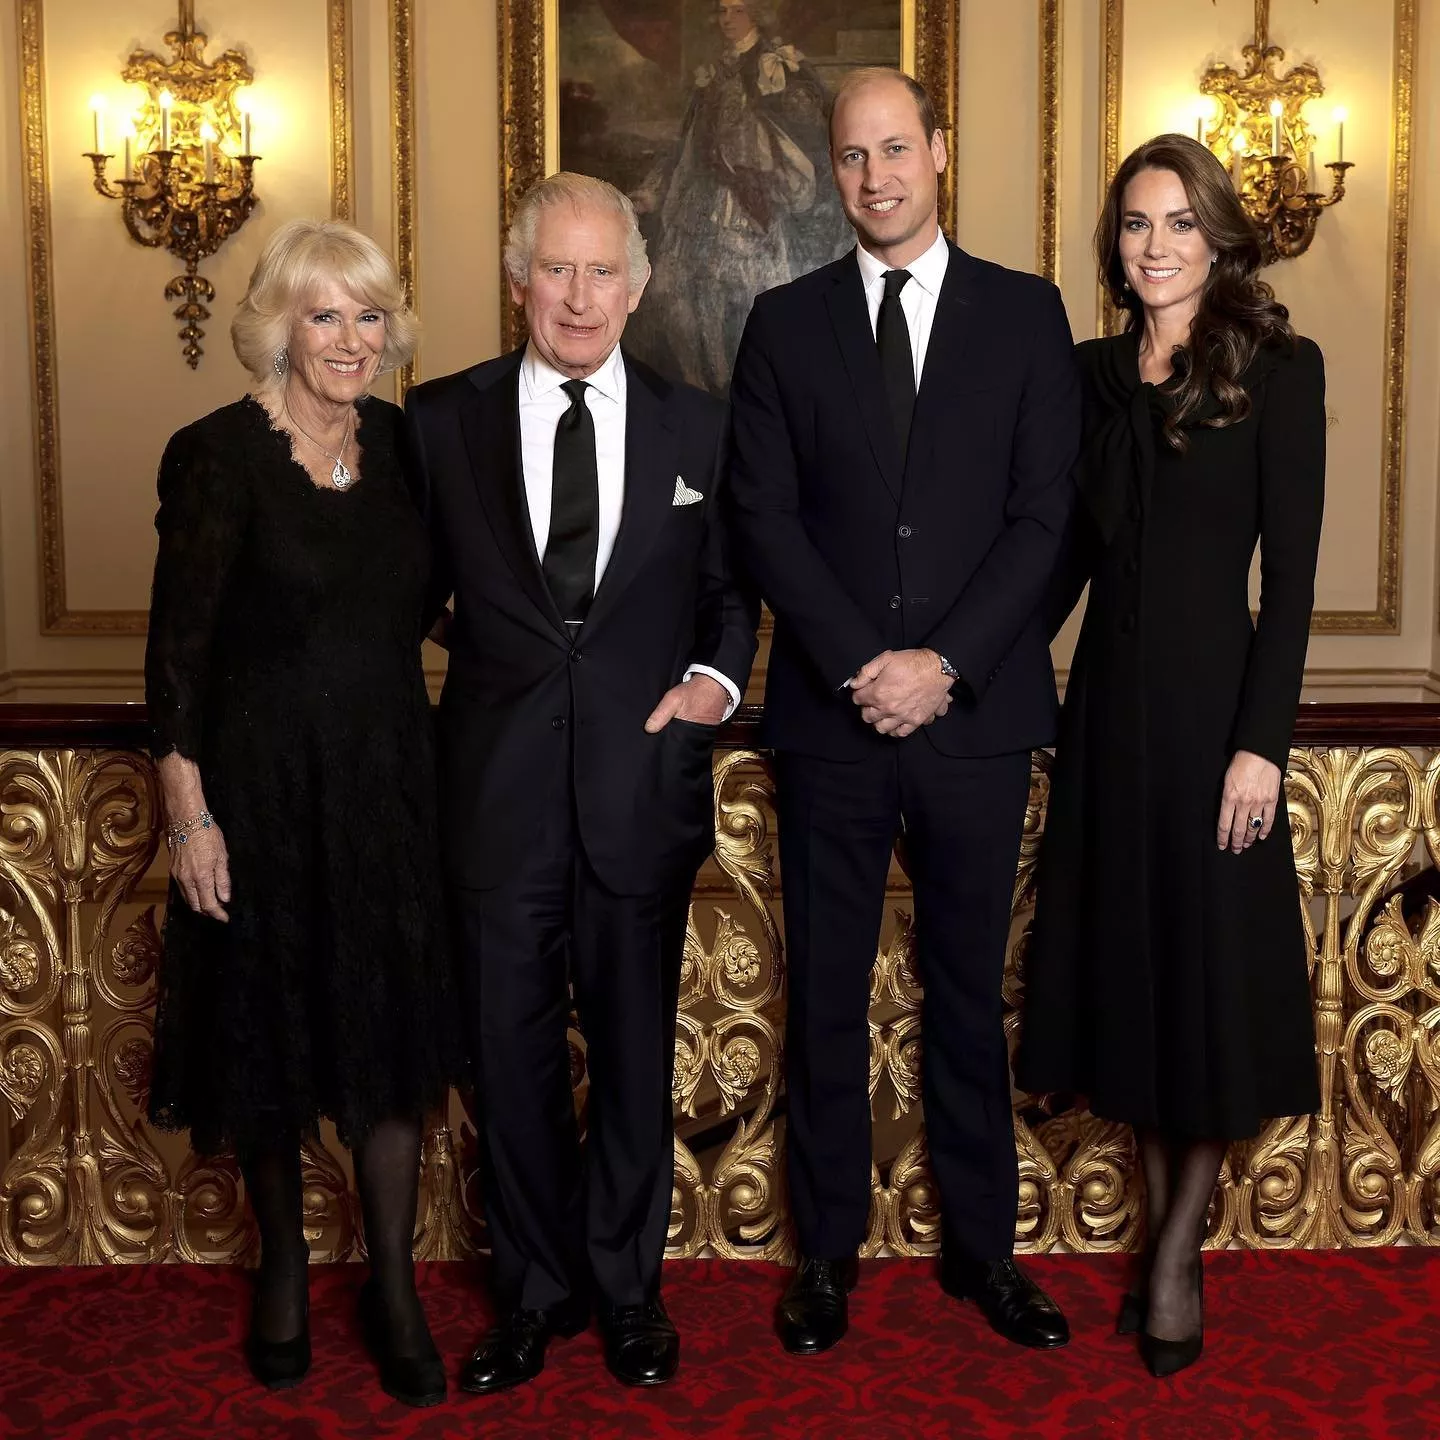 صور رسمية للأمير هاري وميغان ماركل تأتي بعد أول صورة رسمية للعائلة الملكية البريطانية الجديدة